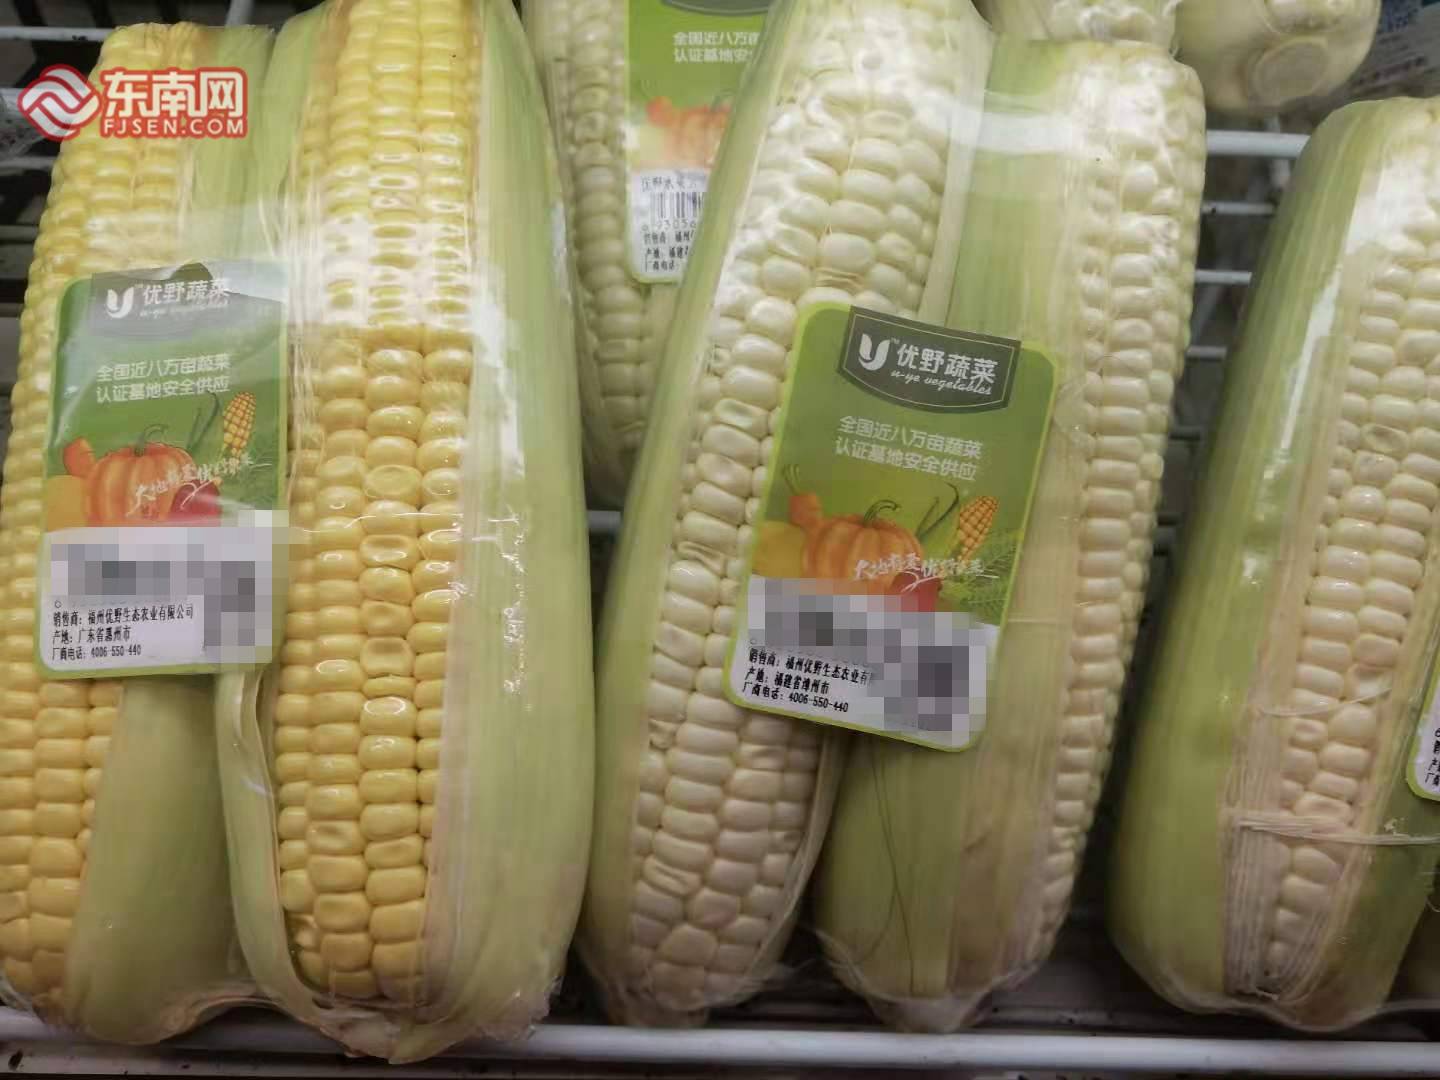 超市的玉米 东南网林锦星摄近日,网上热传"新鲜玉米浸泡药水"视频,有